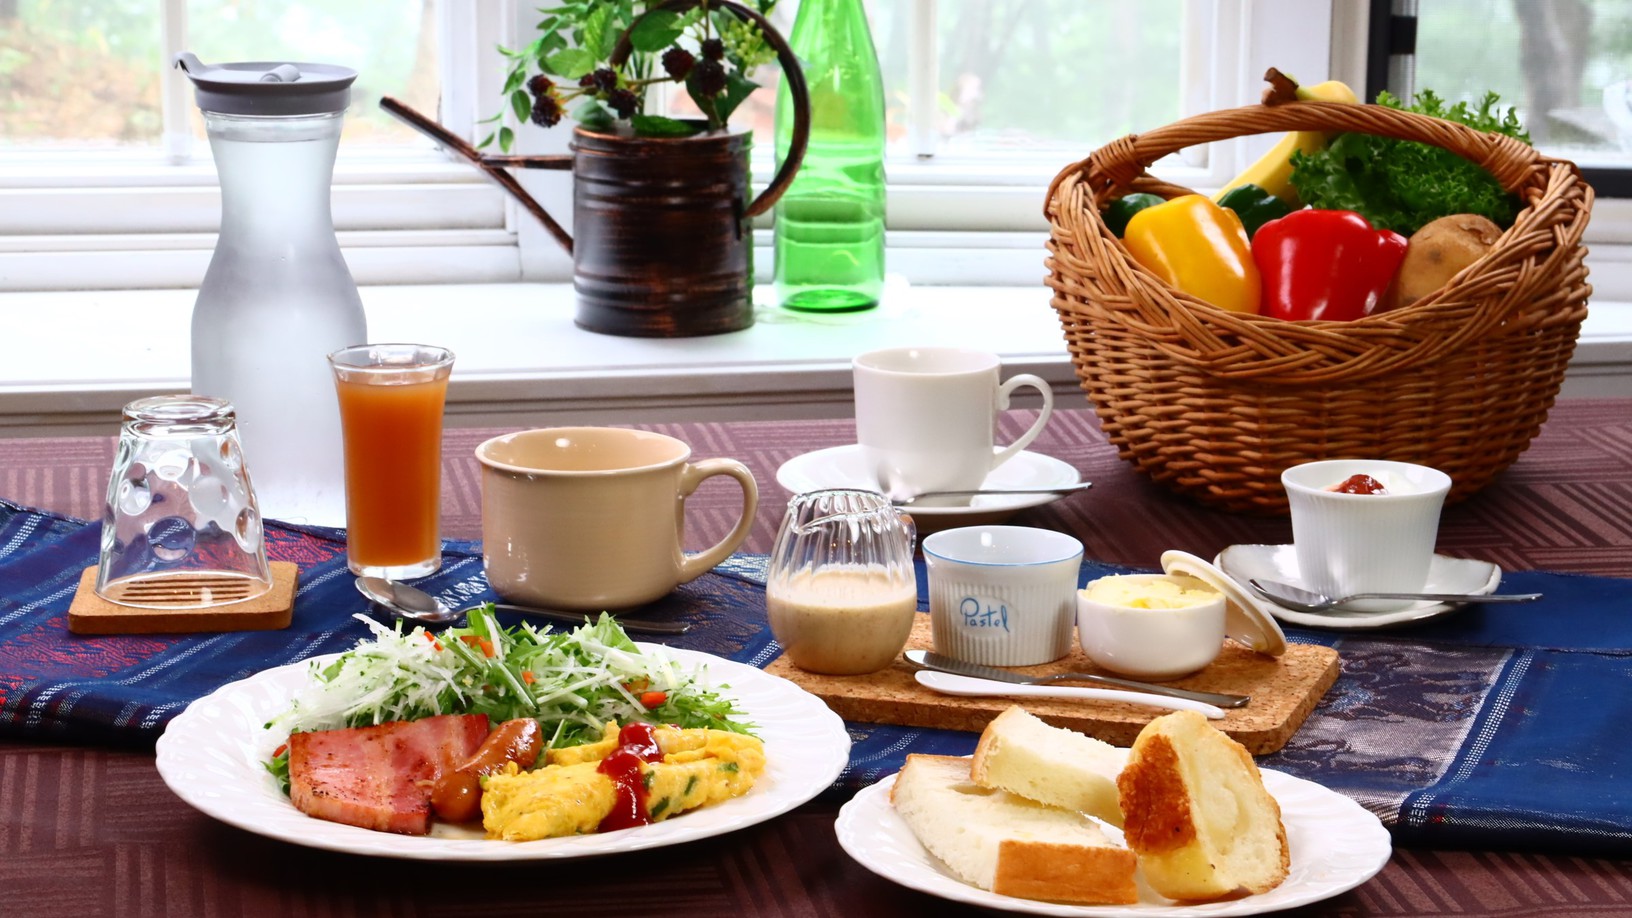 【朝食付き】 旅の朝をおいしい朝食でスタート♪   